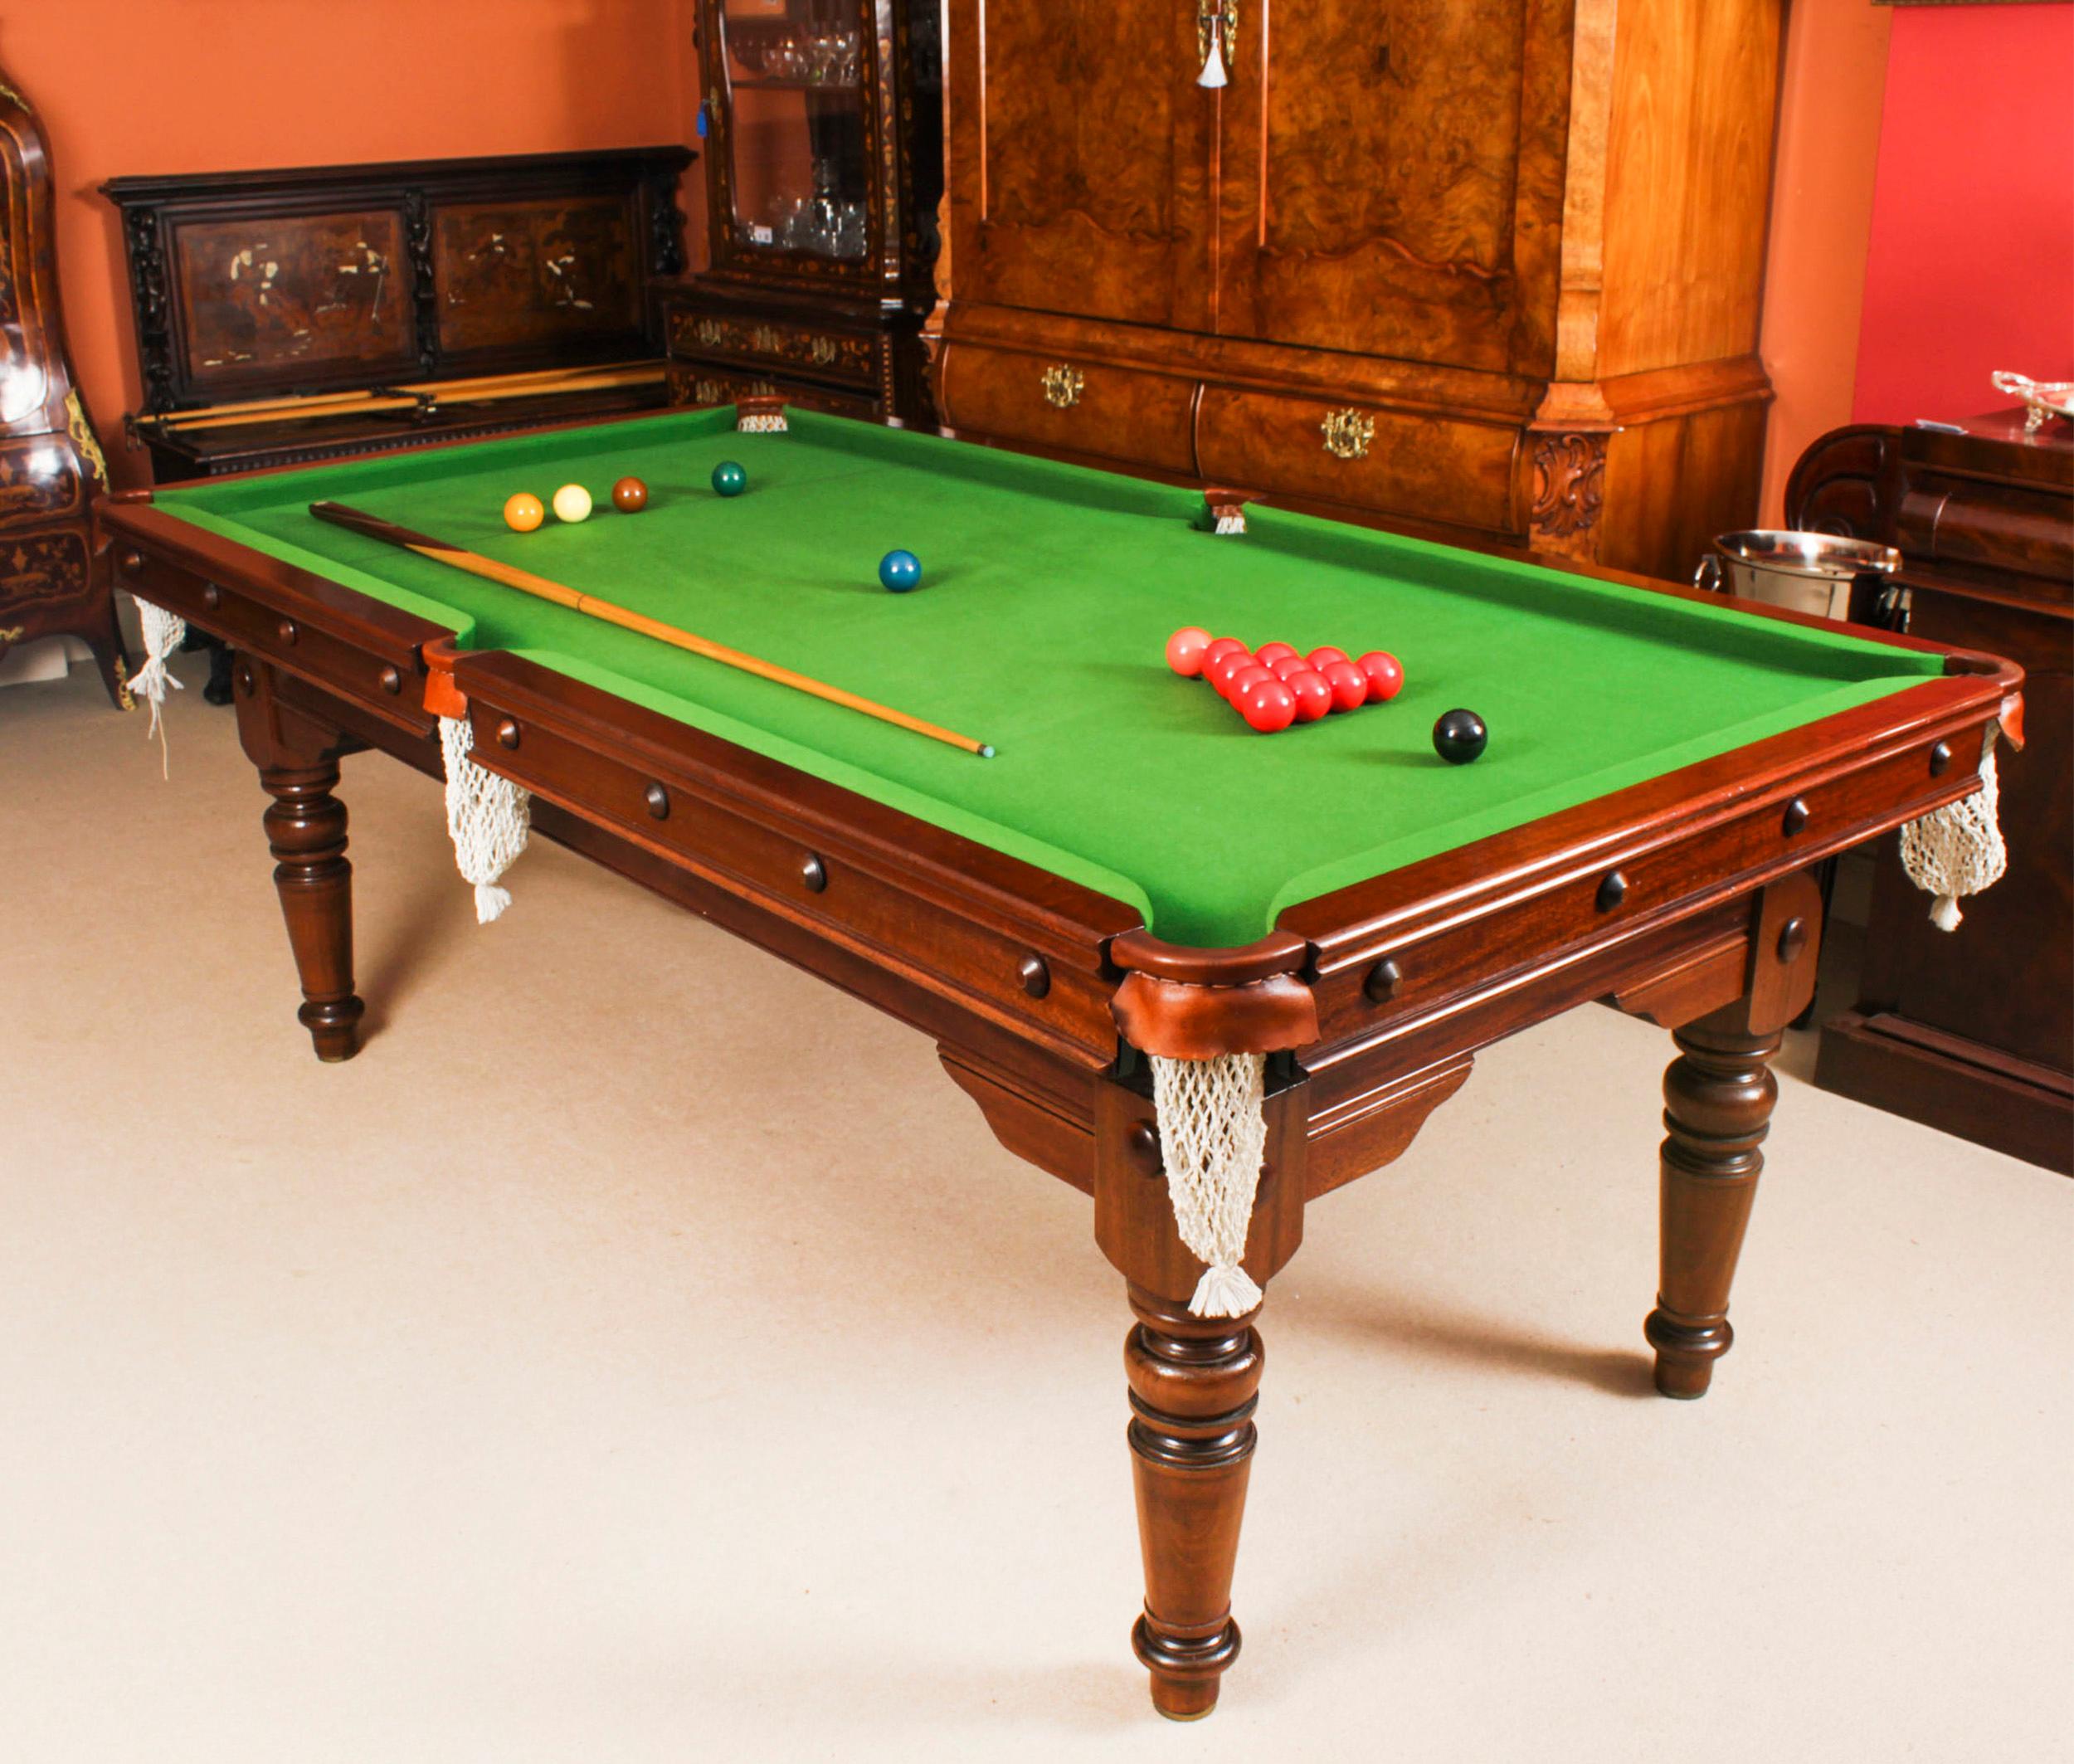 Eine hervorragende antike Edwardian metamorphic  Snooker-Billardtisch/Esstisch von E.J.Riley CIRCA 1900, restauriert von den bekannten Billardtischherstellern Hamilton & Tucker, mit einem Satz von acht Regency-Revival-Esszimmerstühlen.

Dieser Tisch